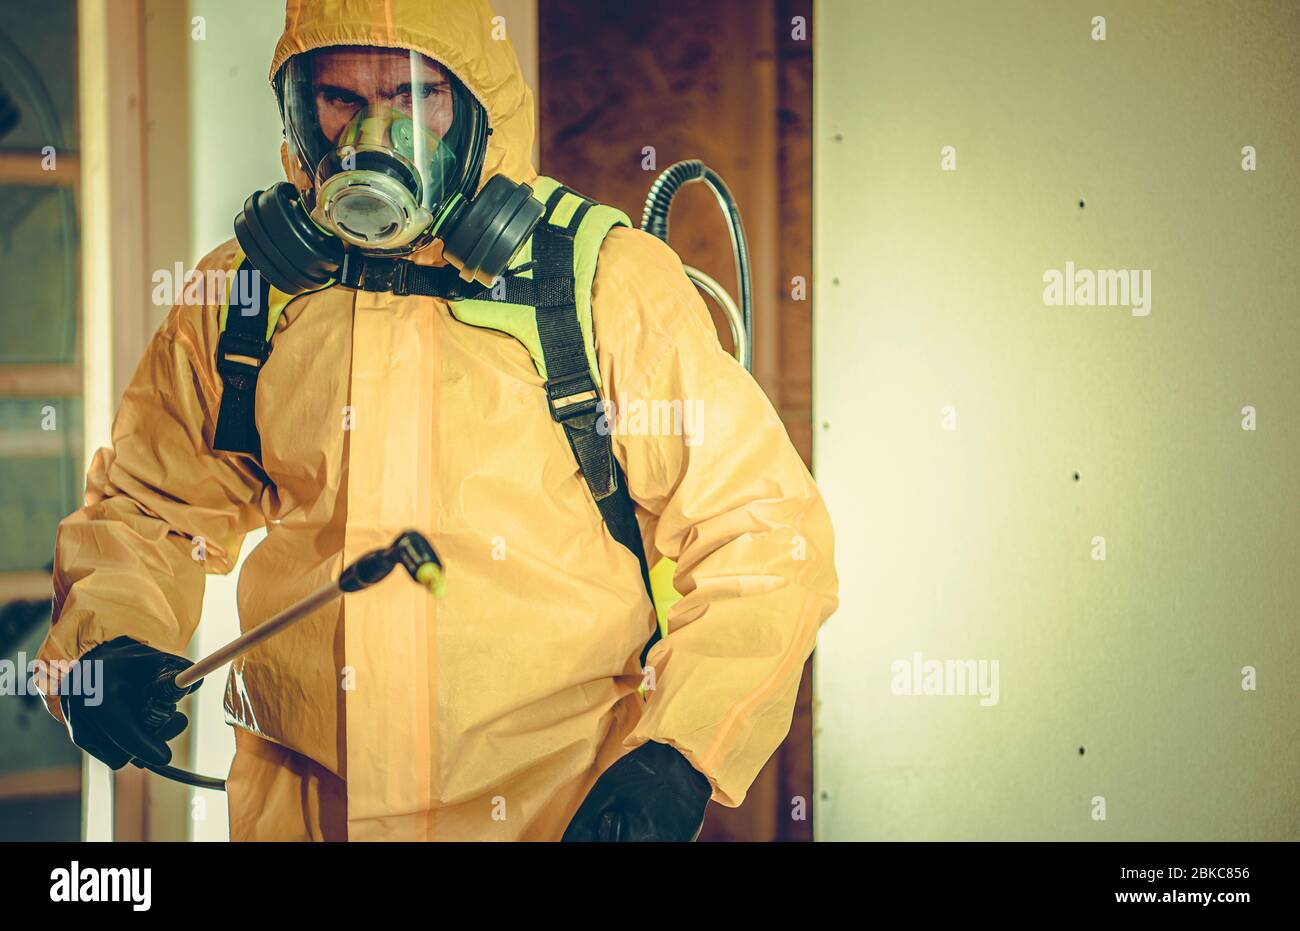 Arbeiter in Hazmat Anzug und Vollmaske Sprühen Desinfektion Flüssigkeit, um  Bakterien und Viren im Gebäude töten Stockfotografie - Alamy